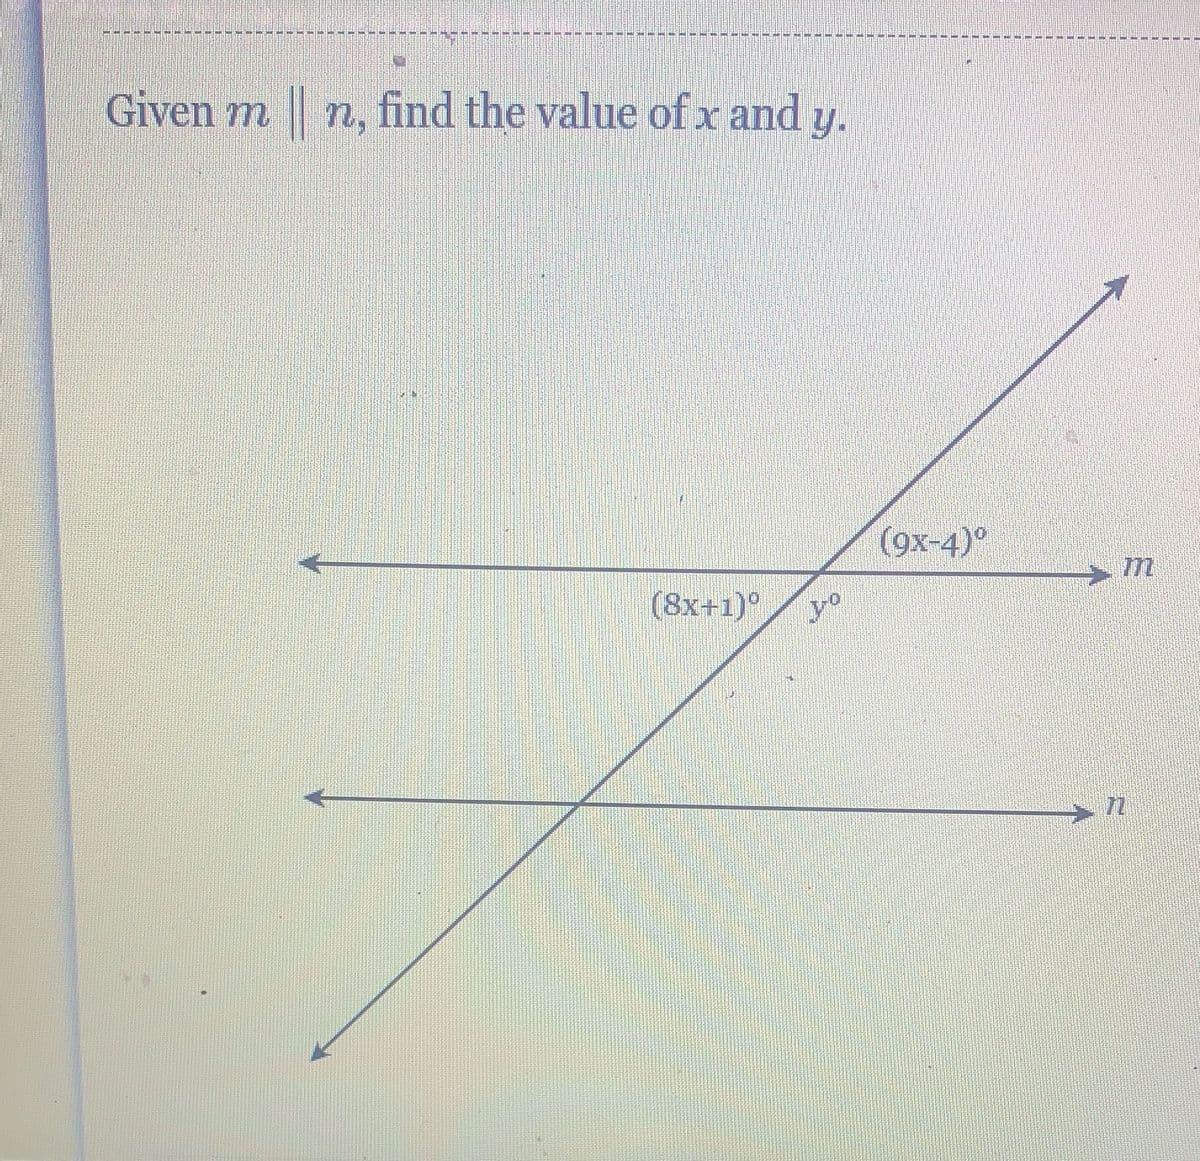 Given m ||n, find the value of x and y.
(8x+1)°
Fro
Jo
(9x-4)°
7